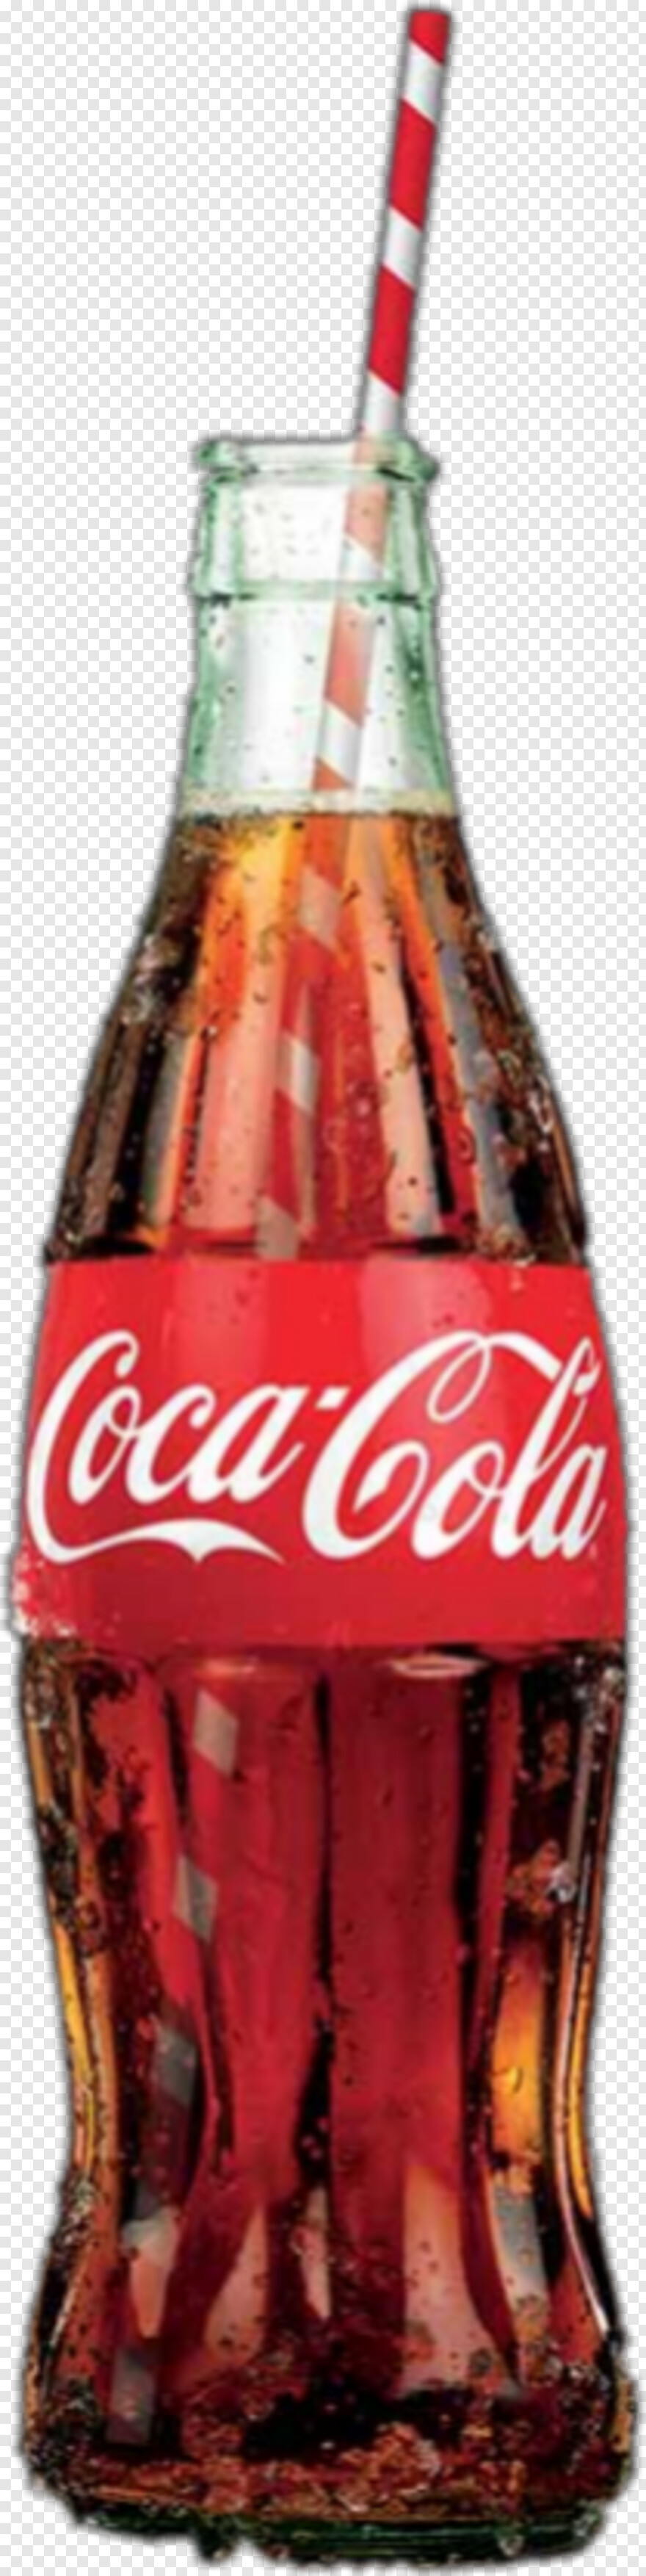 coca-cola-bottle # 325195